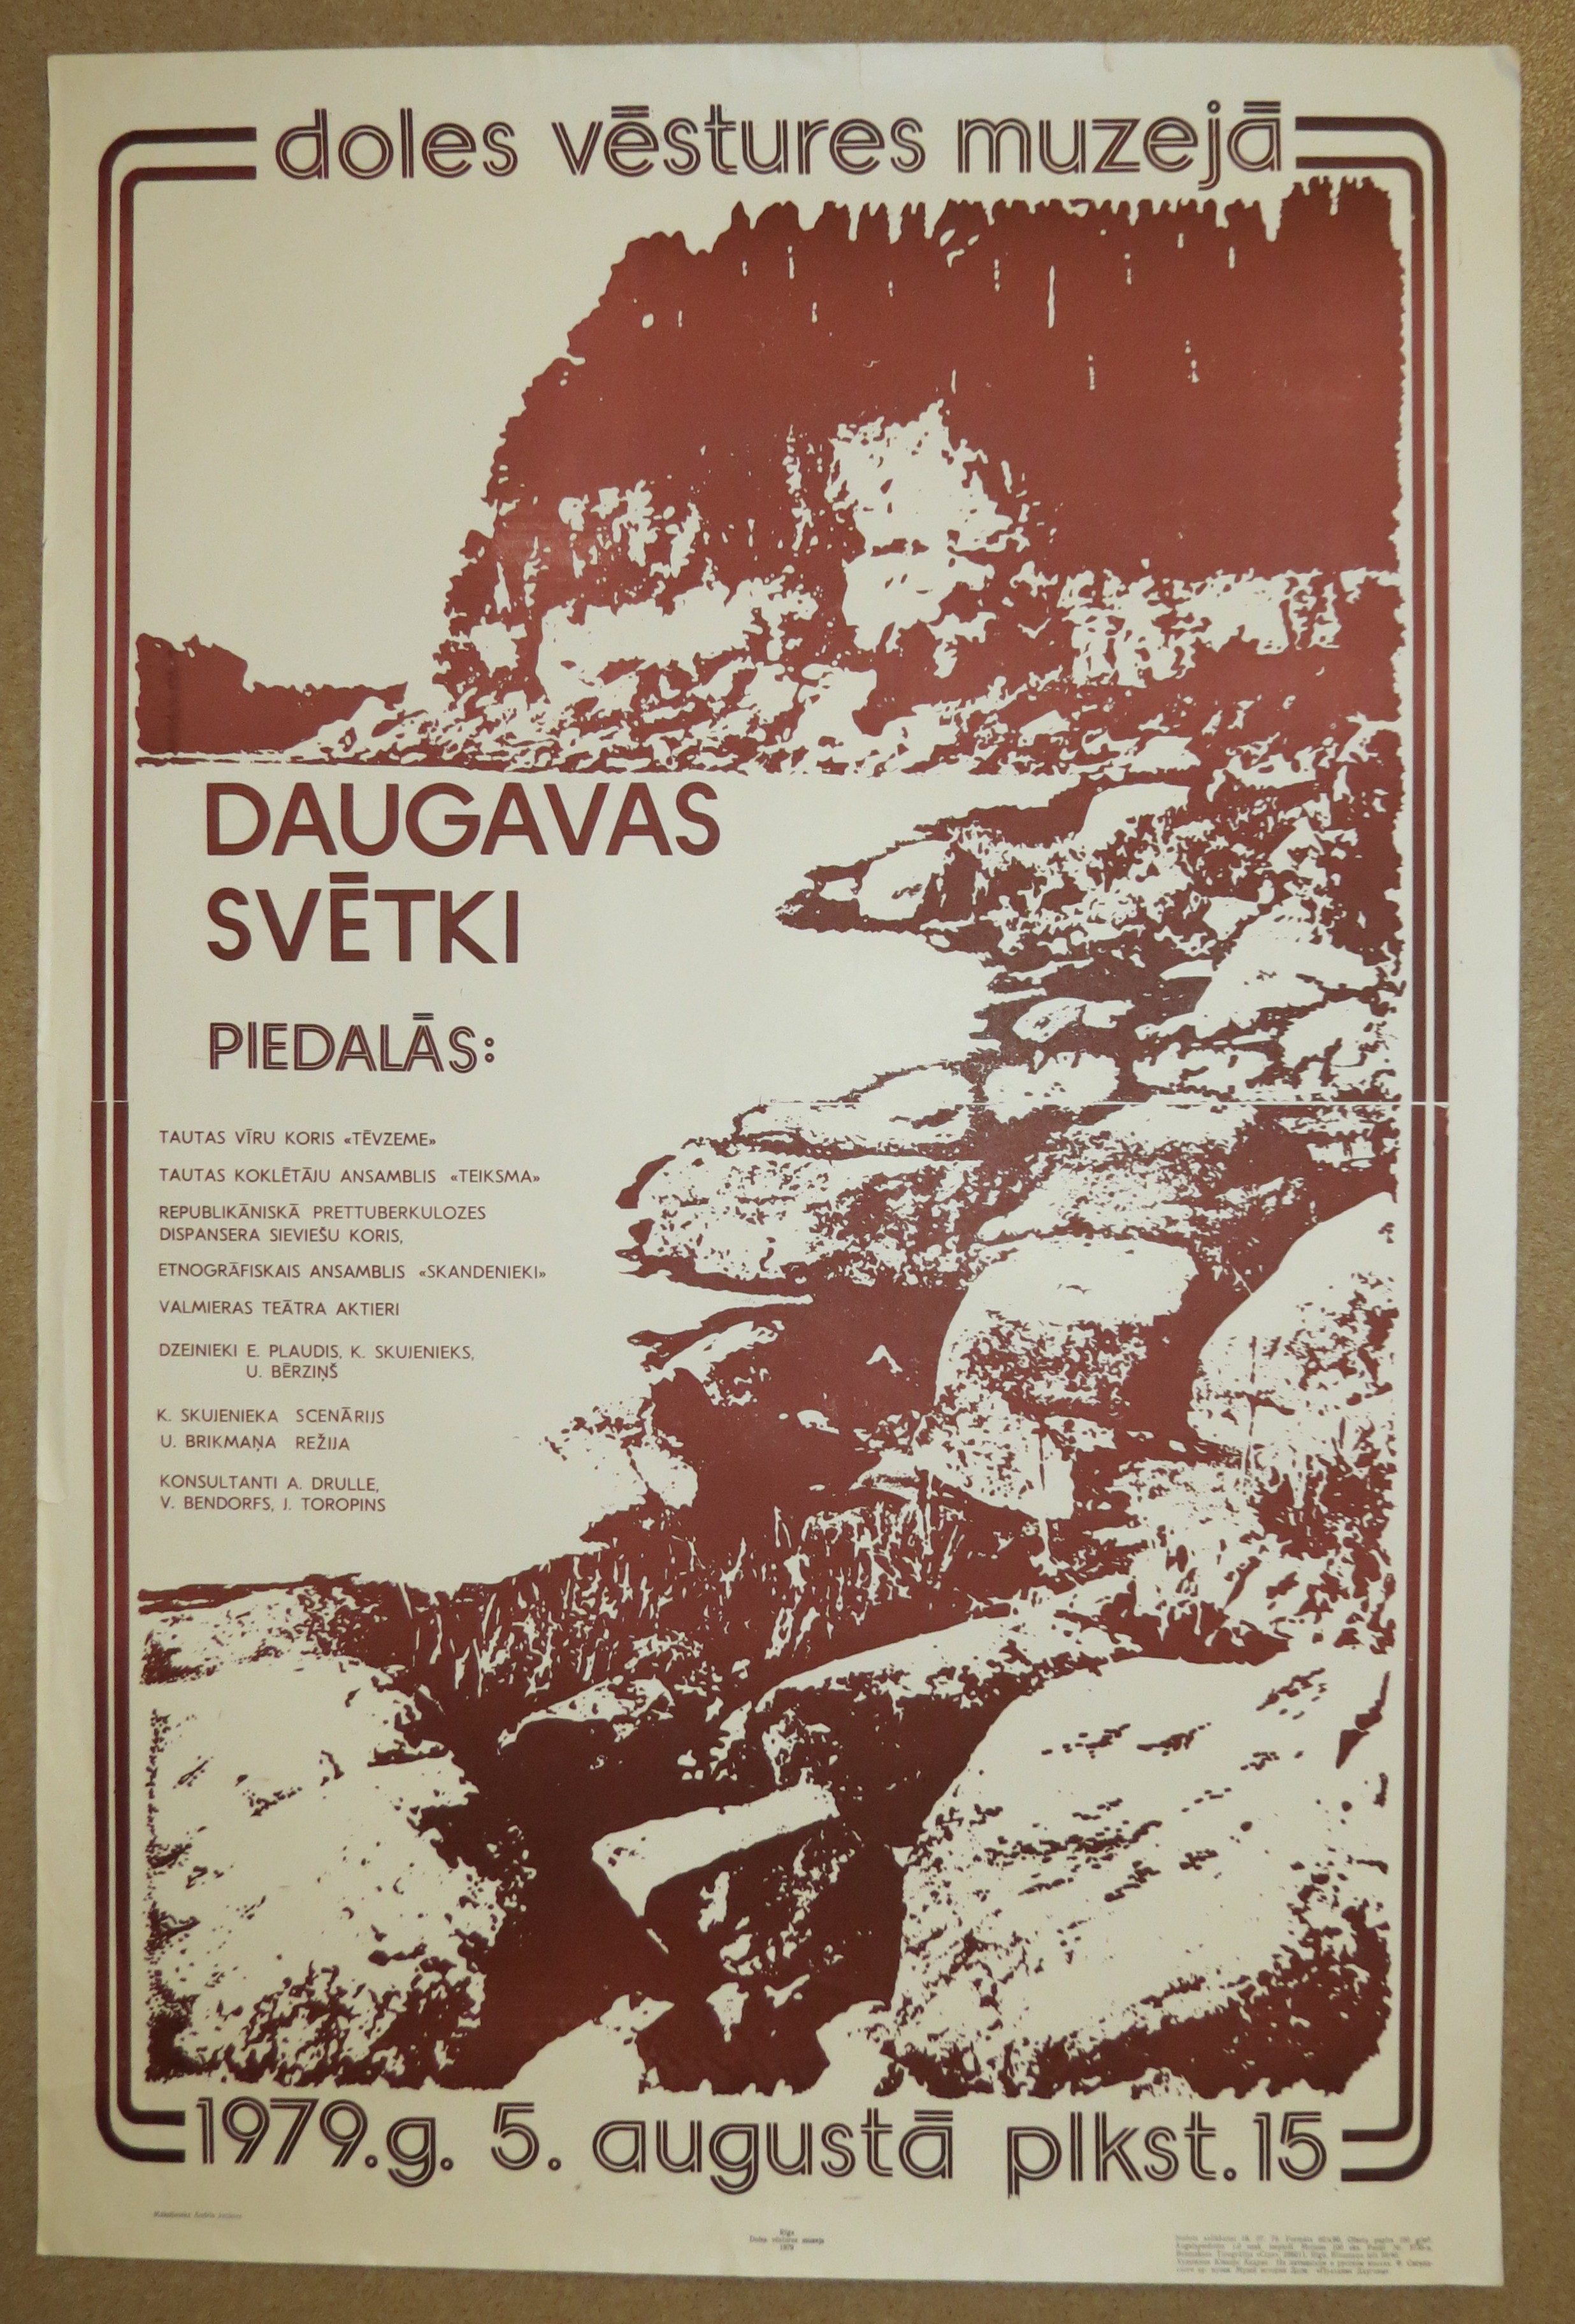 The poster of the First Daugava Festivity, DoM ZA 397